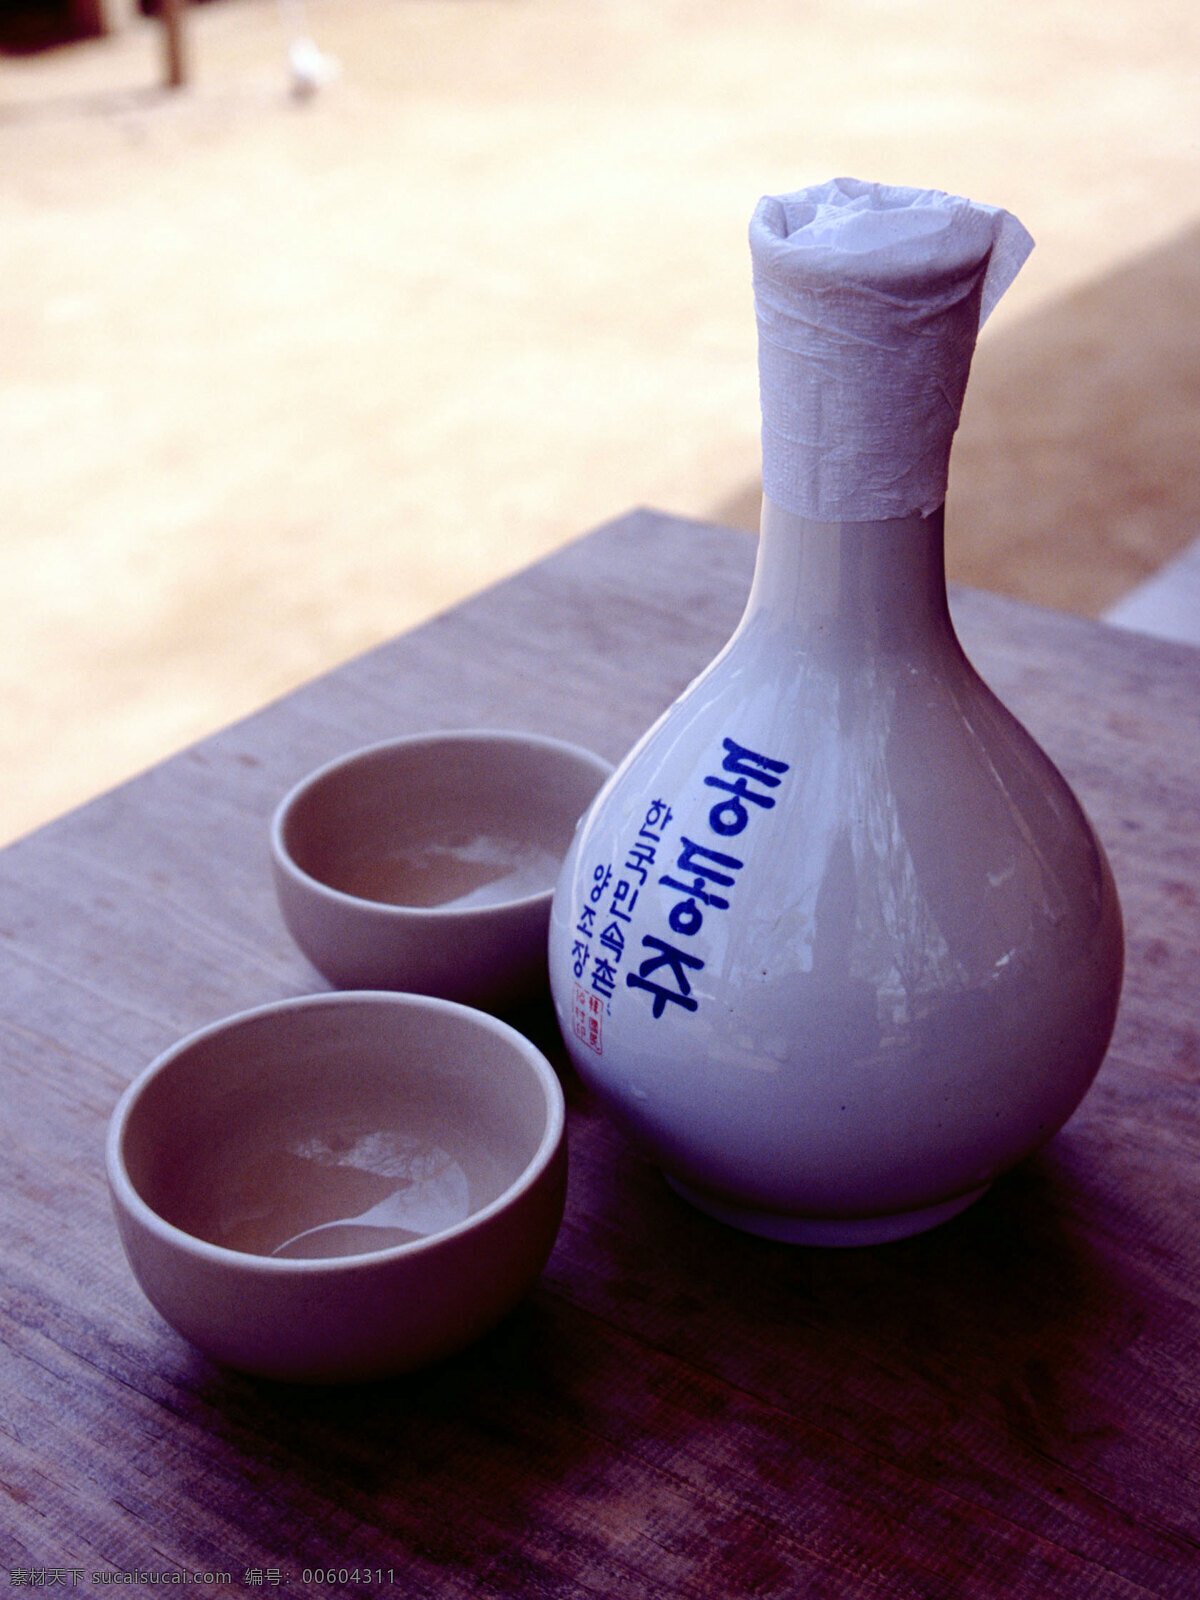 韩国传统酒壶 韩国 酒杯 木桌 阳光 酒之品味 饮料酒水 餐饮美食